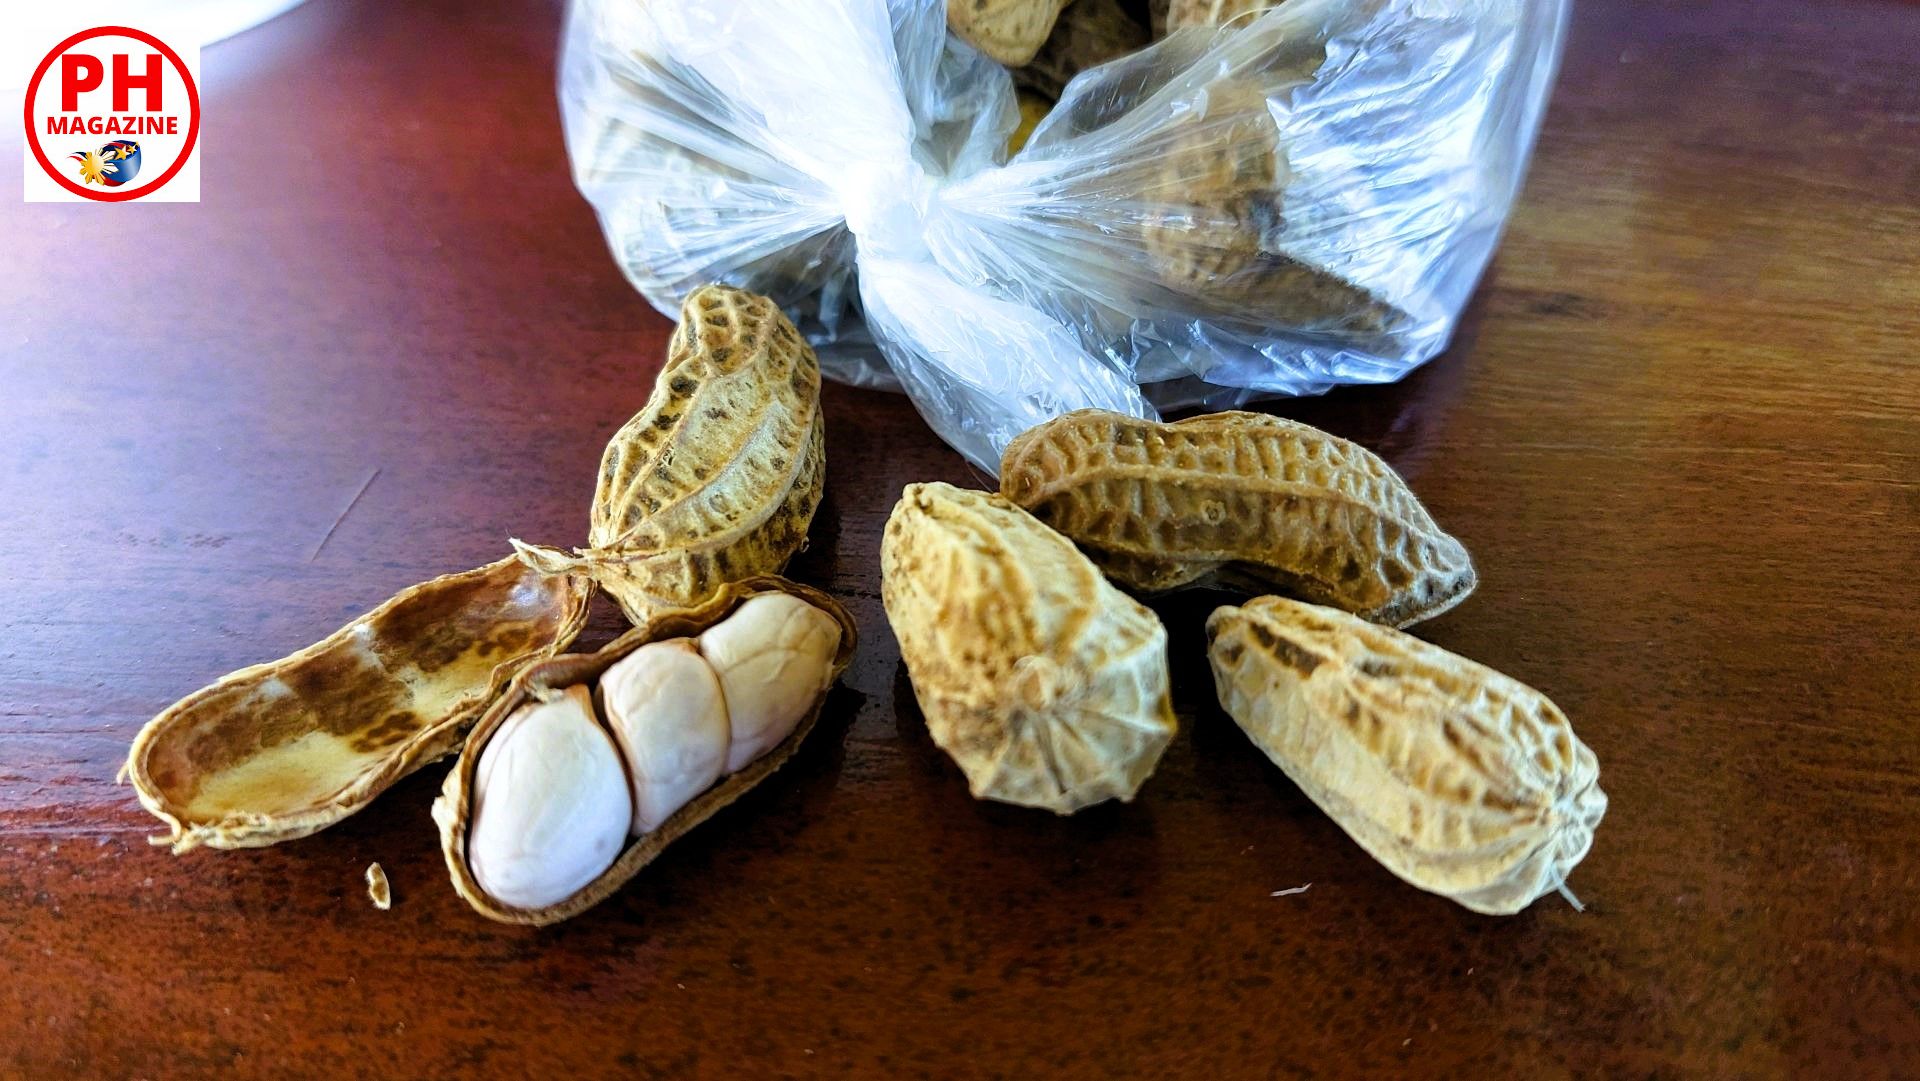 PHILIPPINEN MAGAZIN - FOTO DES TAGES - Gekochte Erdnüsse